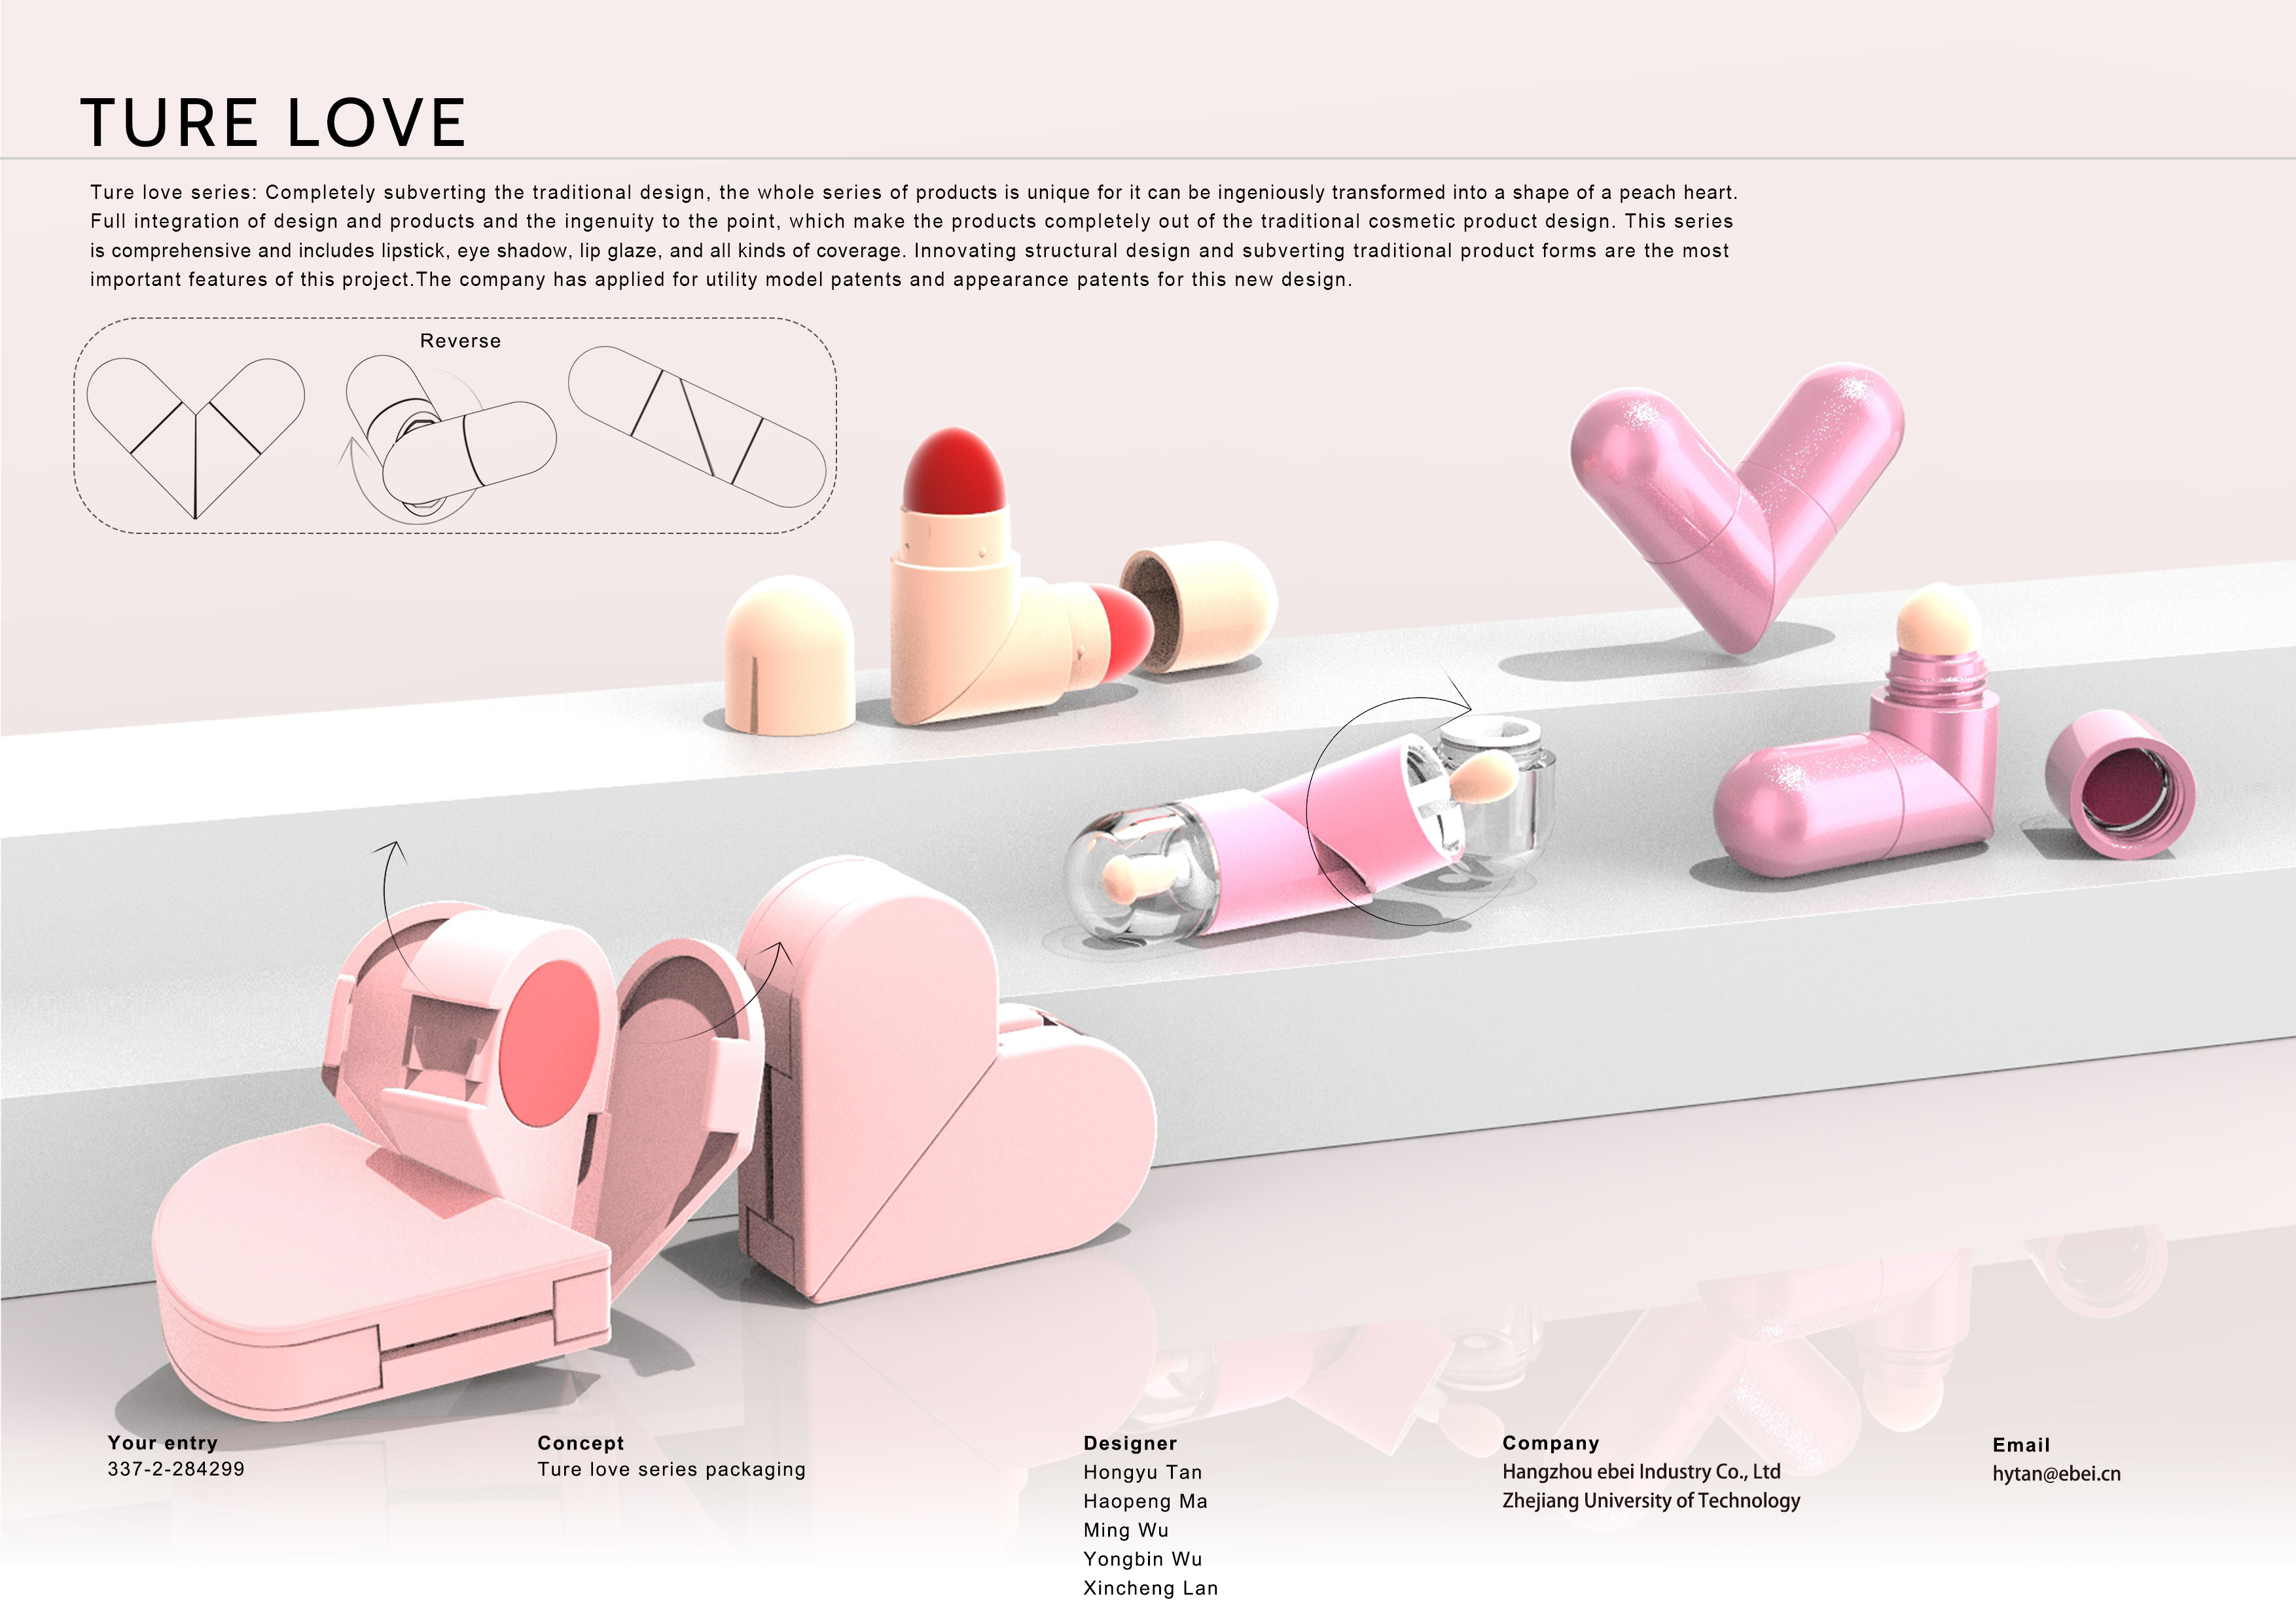 Ture love series packaging